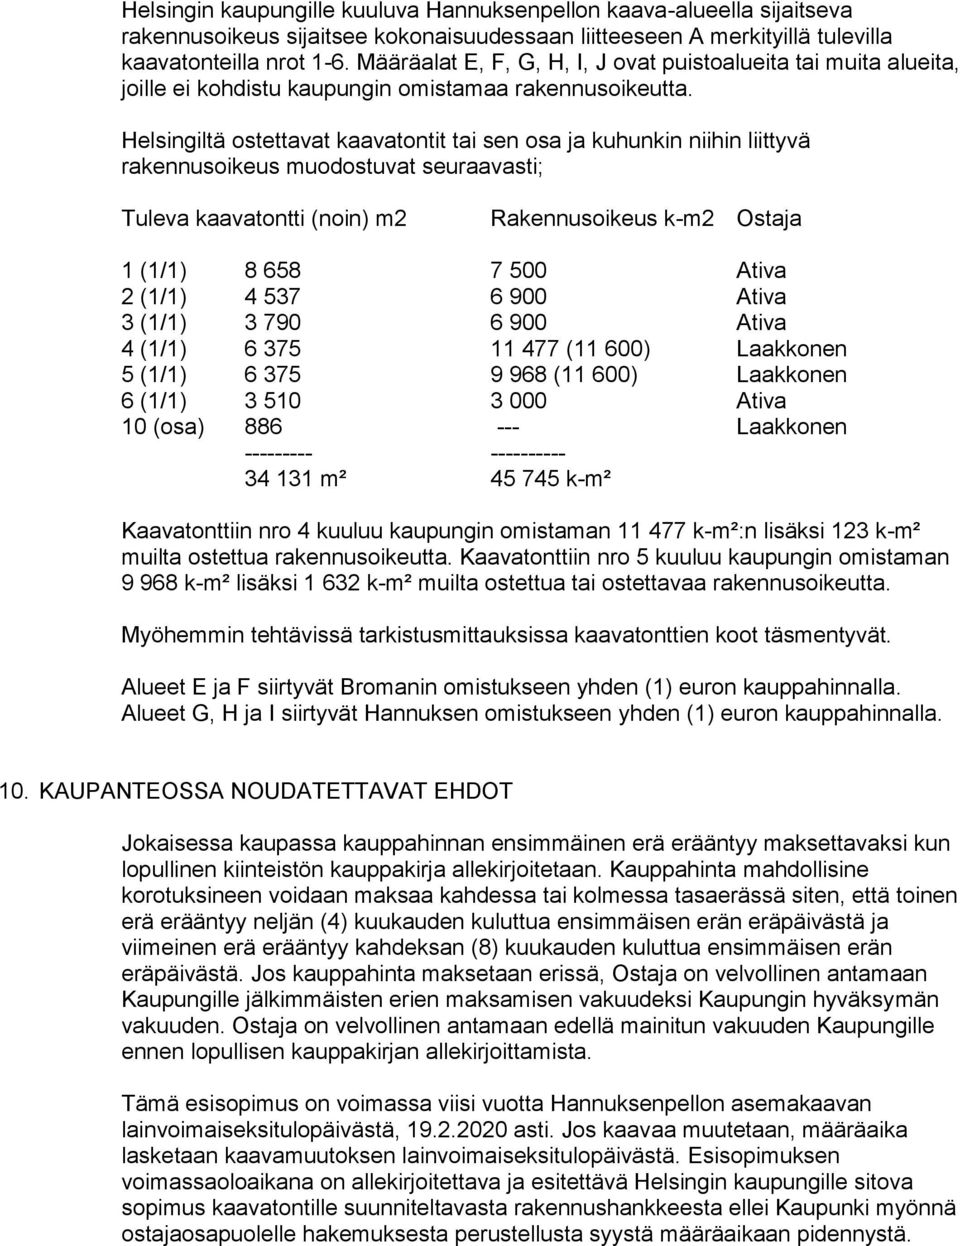 Helsingiltä ostettavat kaavatontit tai sen osa ja kuhunkin niihin liittyvä rakennusoikeus muodostuvat seuraavasti; Tuleva kaavatontti (noin) m2 Rakennusoikeus k-m2 Ostaja 1 (1/1) 8 658 7 500 Ativa 2